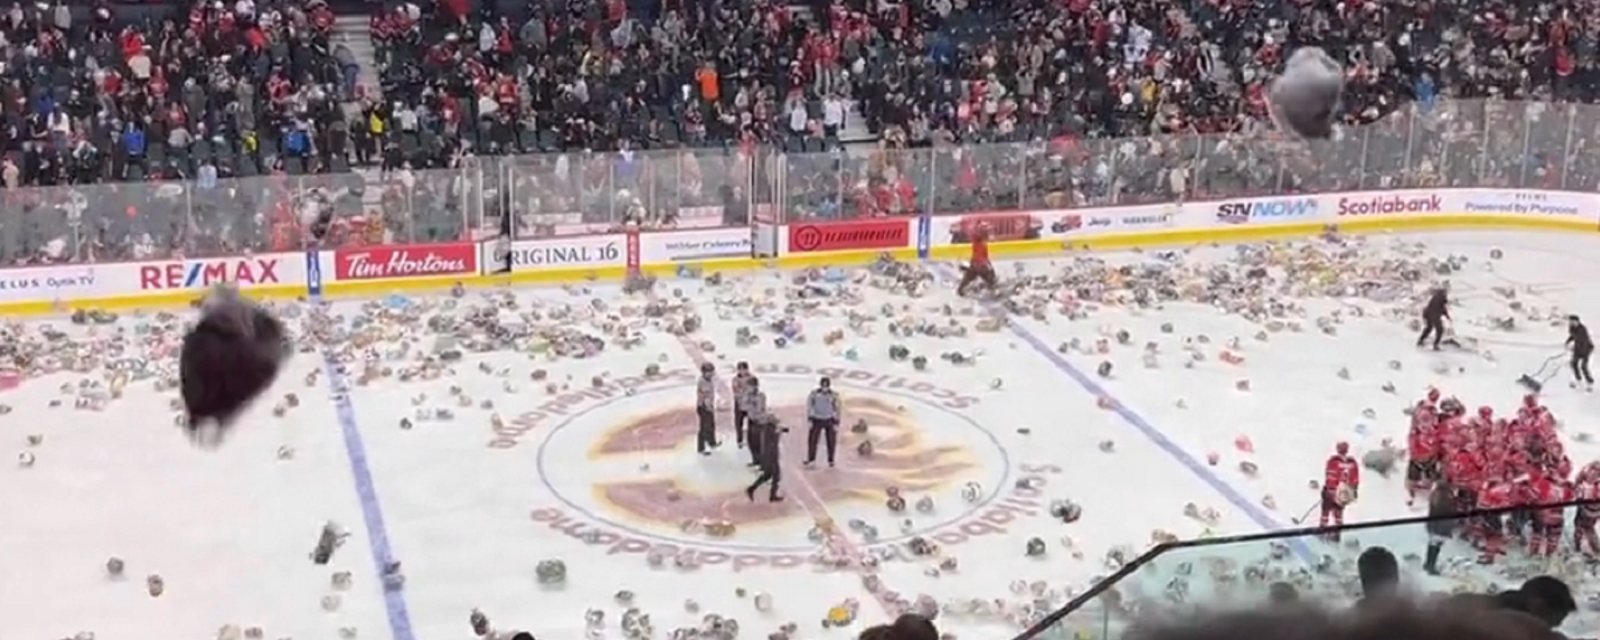 Fans in Calgary flood the ice with teddy bears!